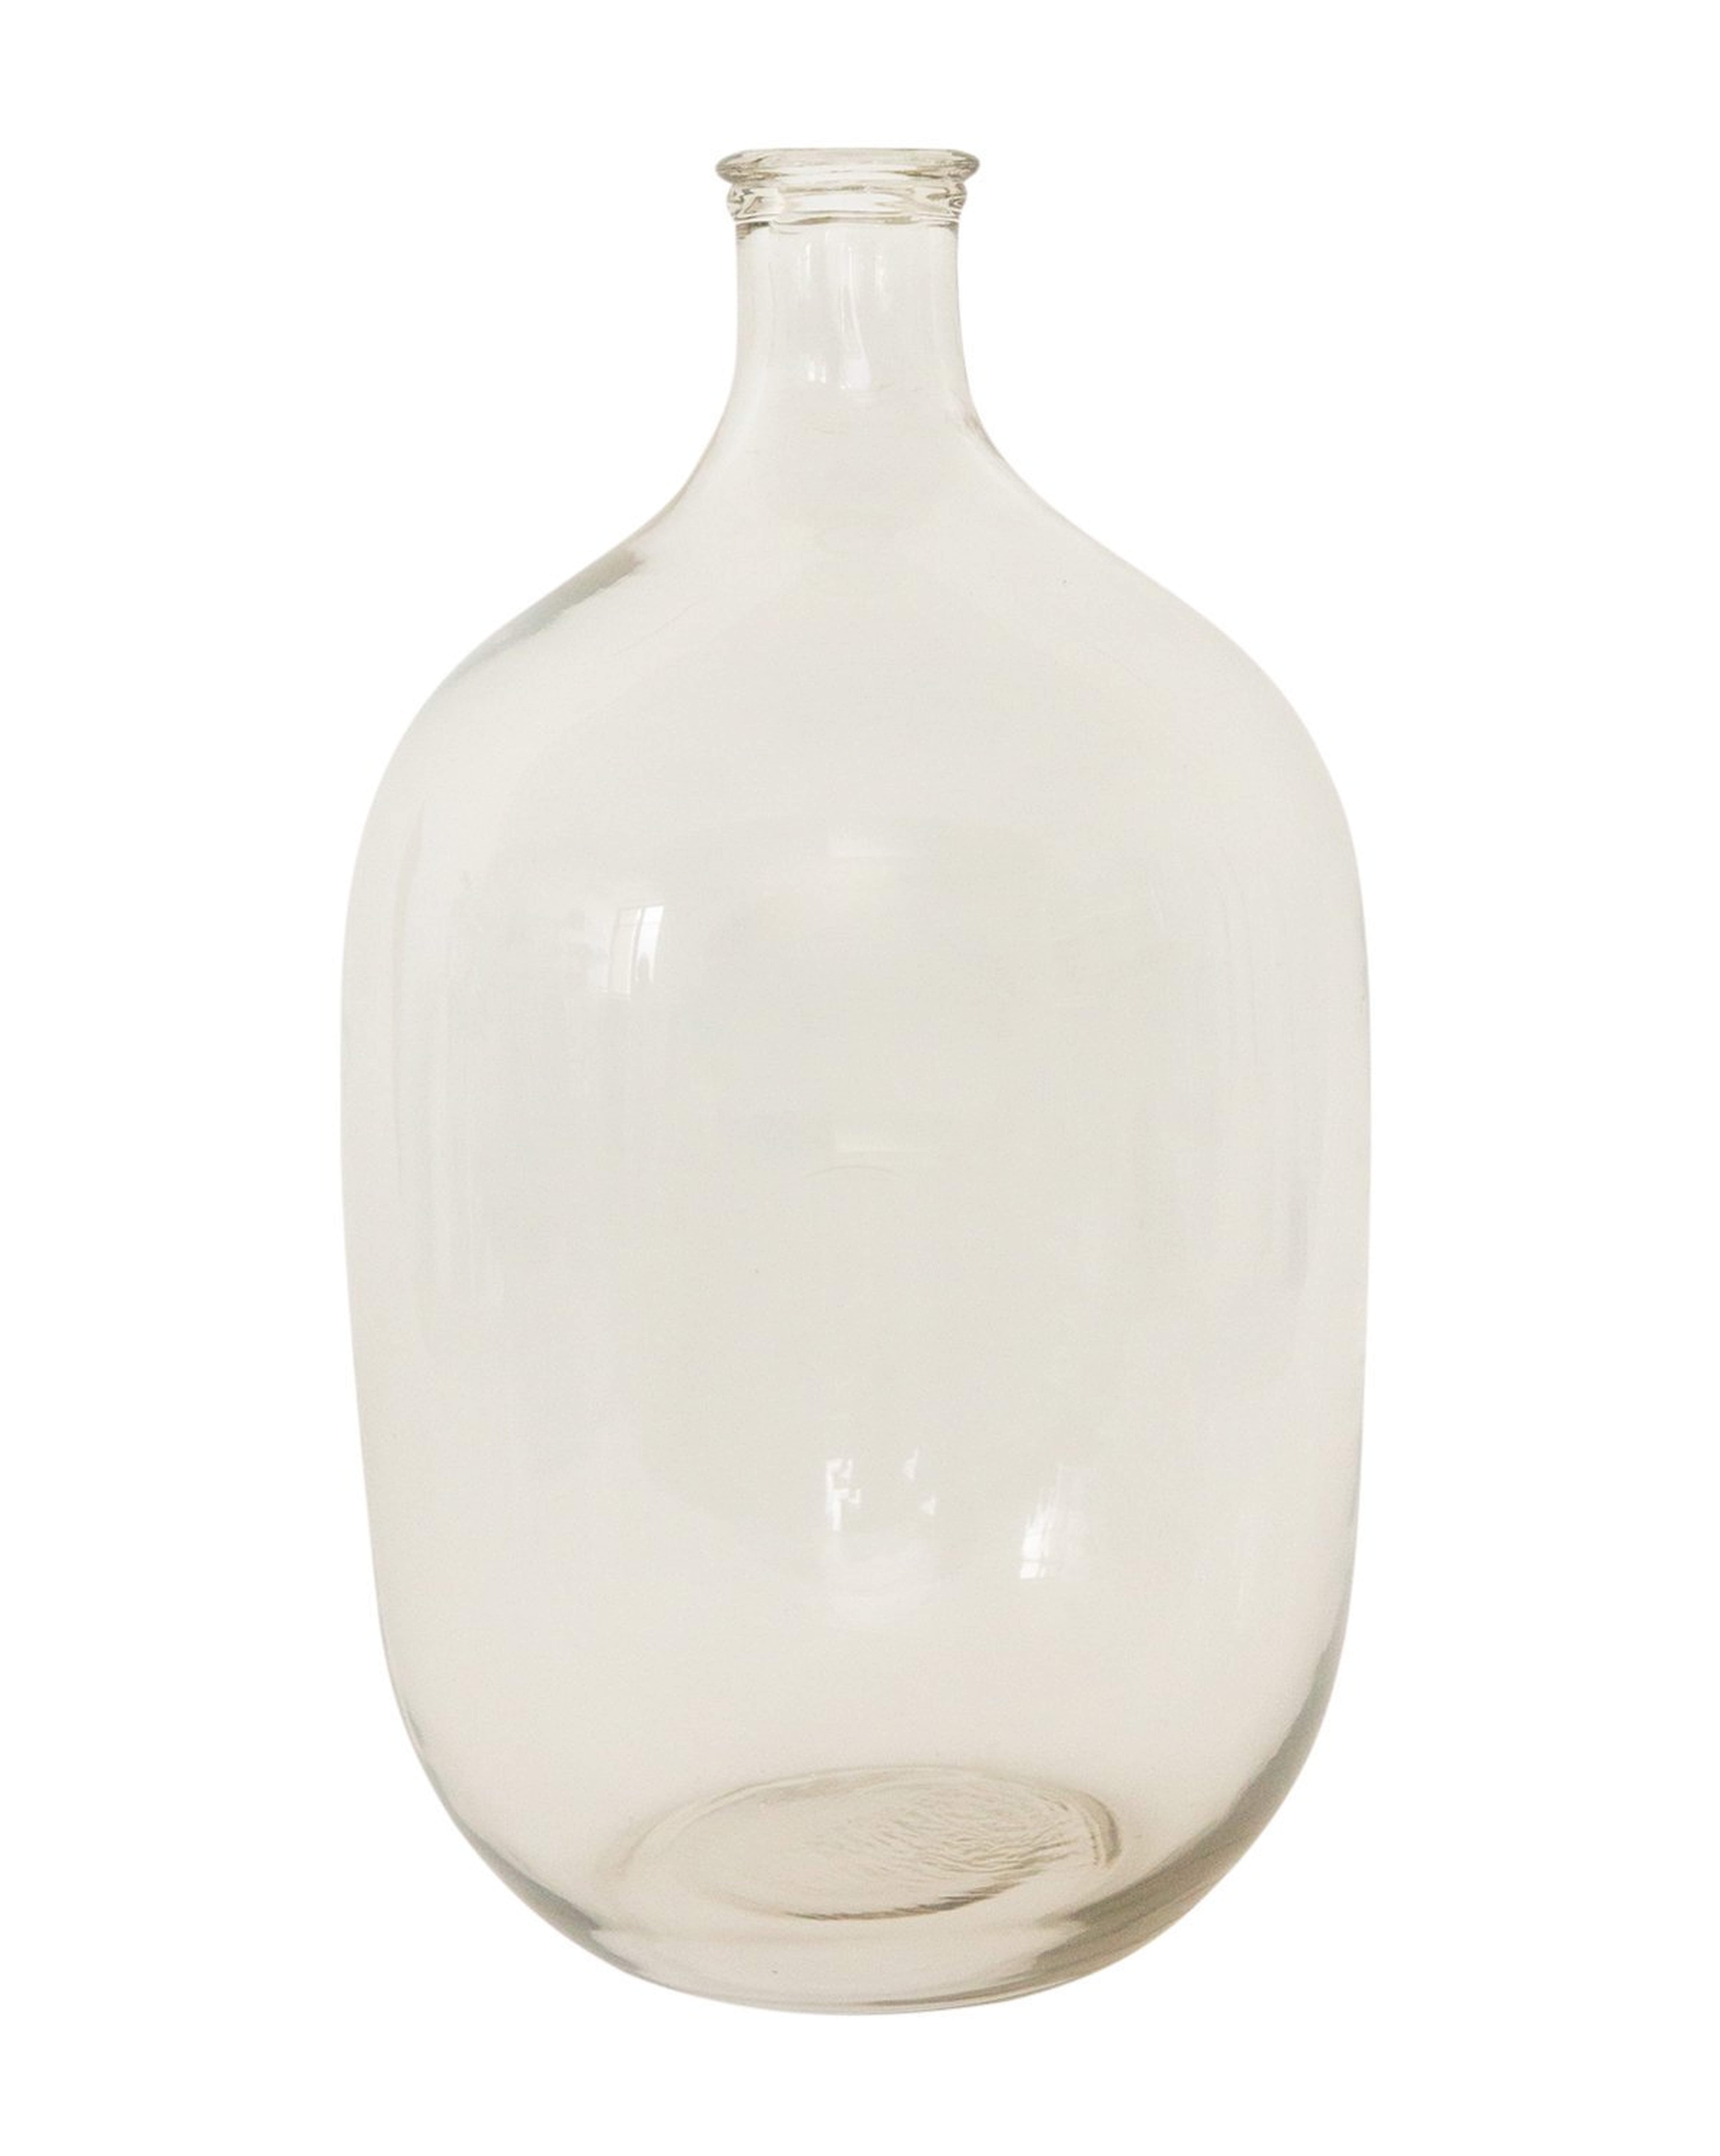 Tara Glass Bottle Vase - McGee & Co.